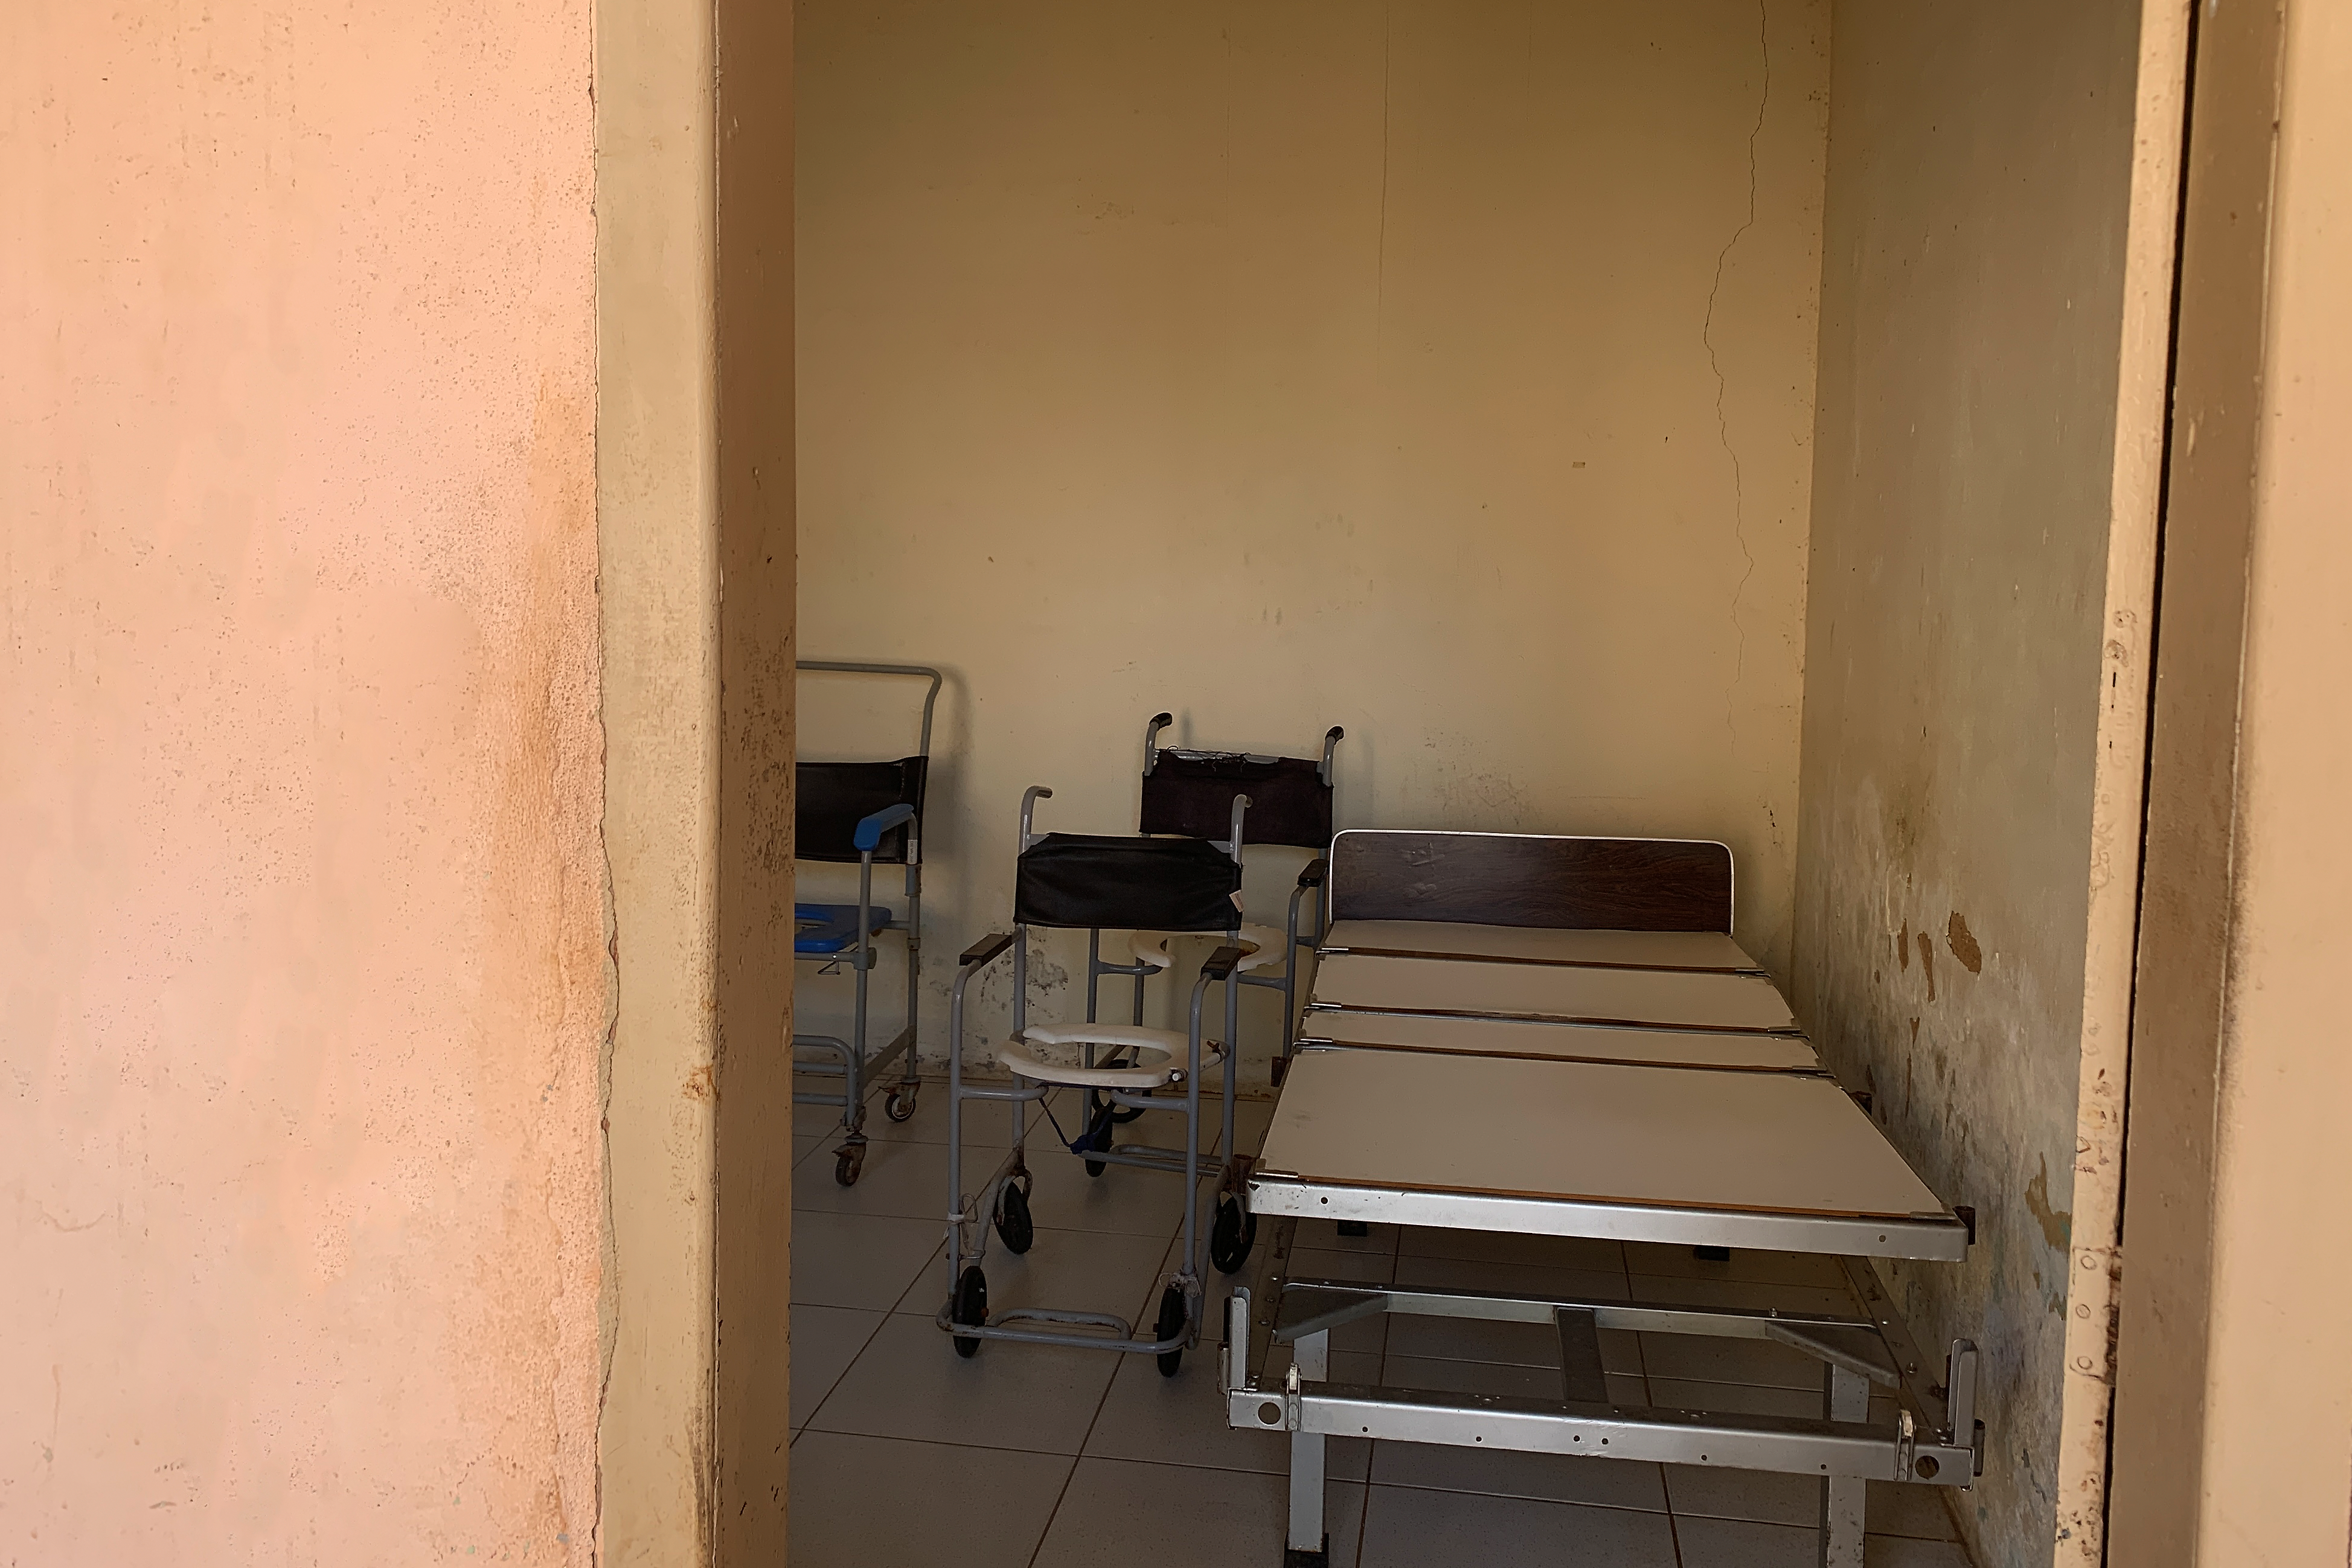 Fotografia digital colorida. Atrás de uma porta, vemos materiais inutilizados, como cadeiras de rodas e cama hospitalar.